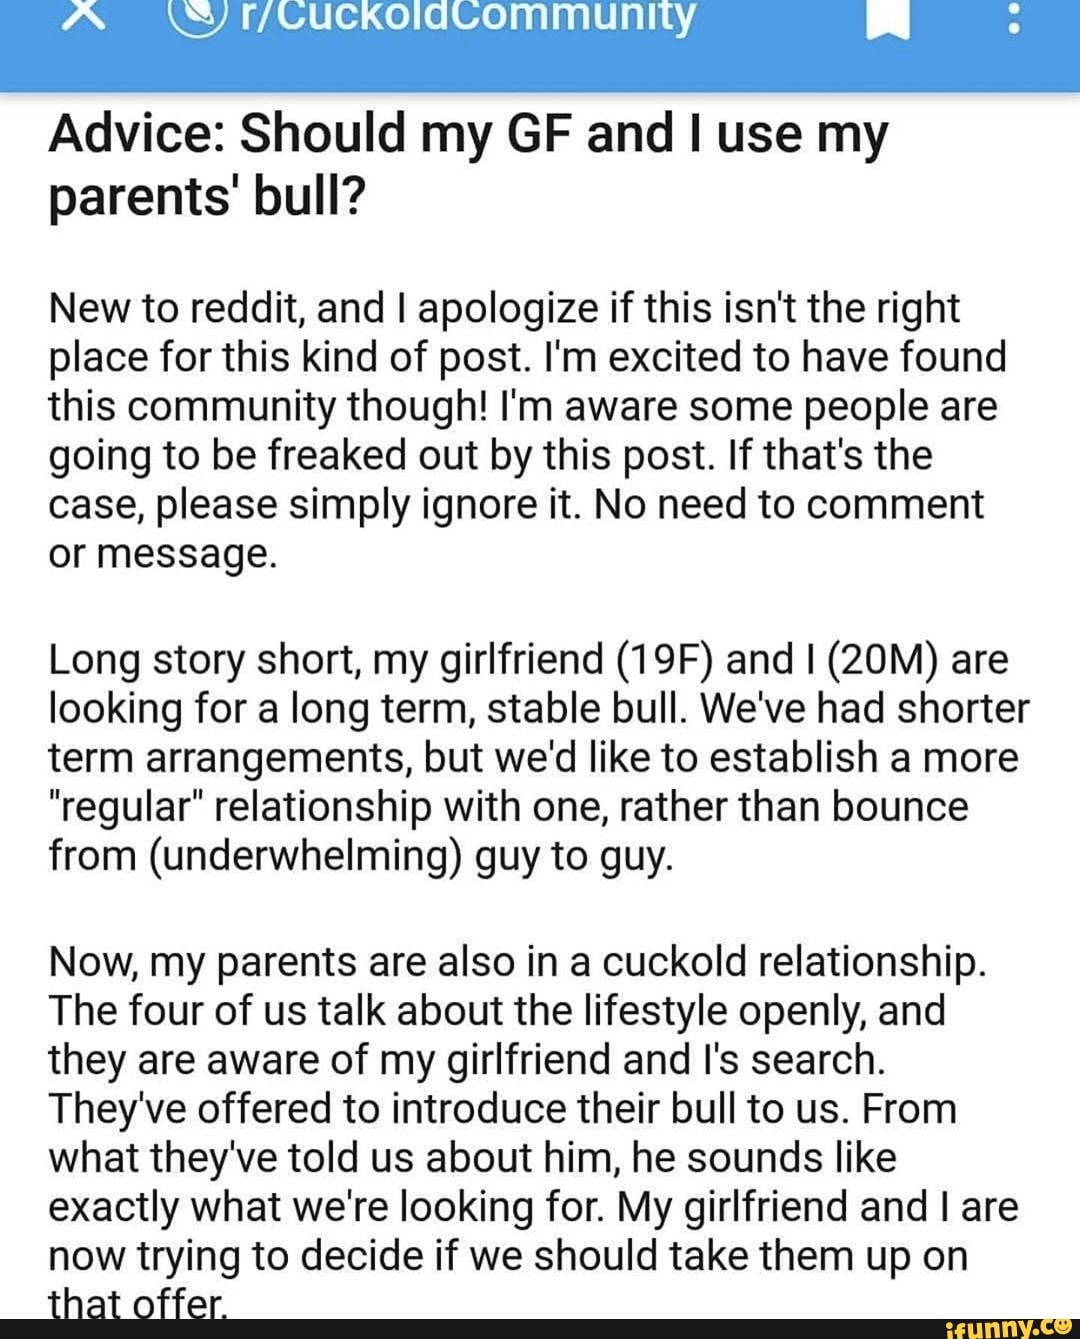 Cuckold Story Reddit